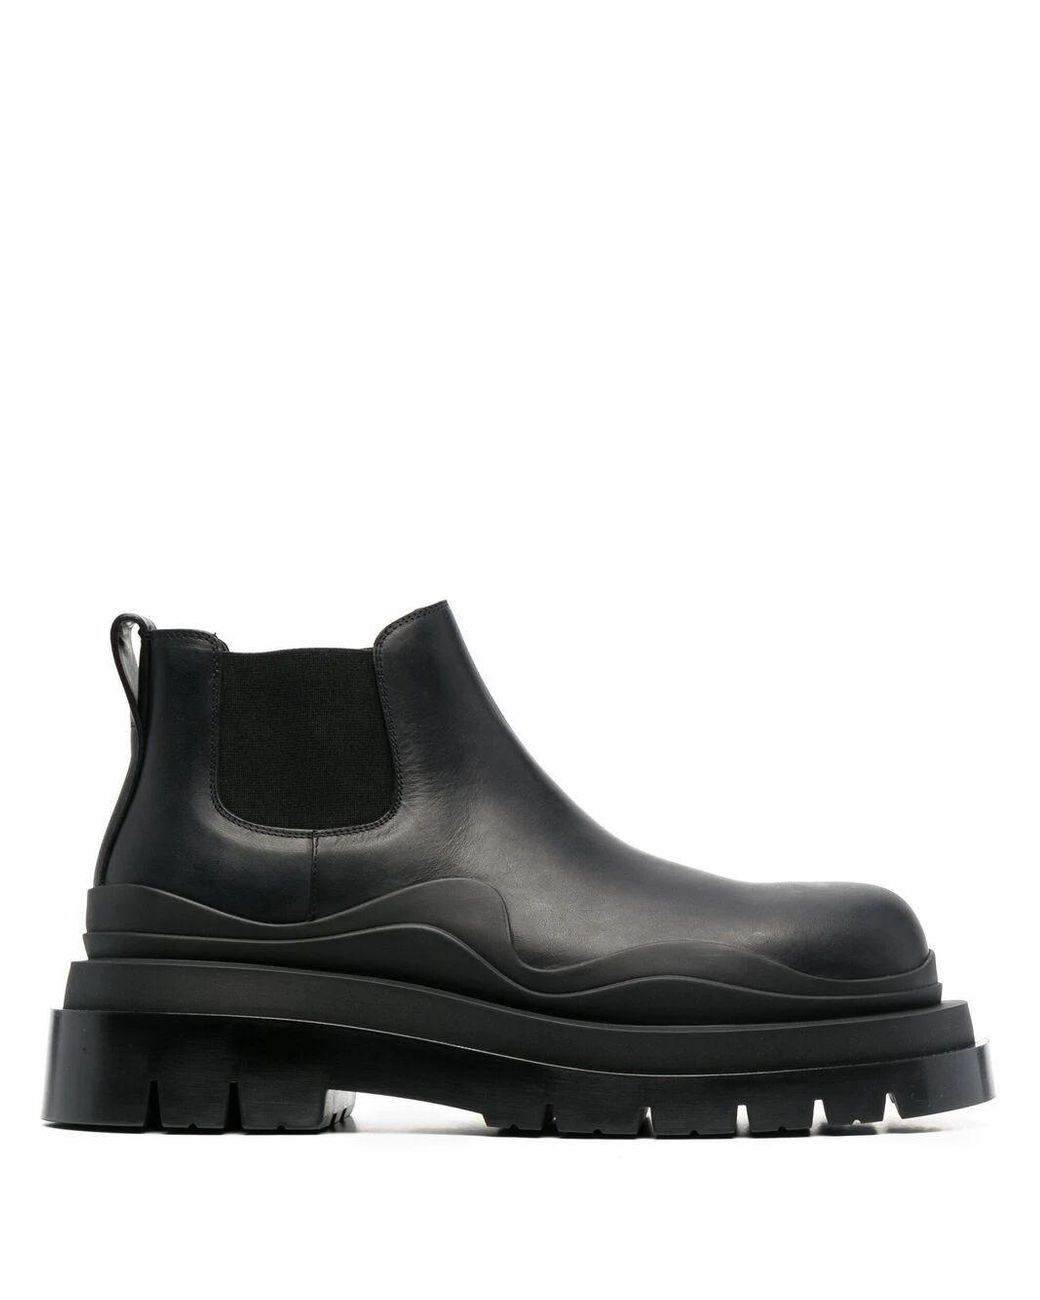 Bottega Veneta Leather Ankle Boots in Black for Men - Lyst